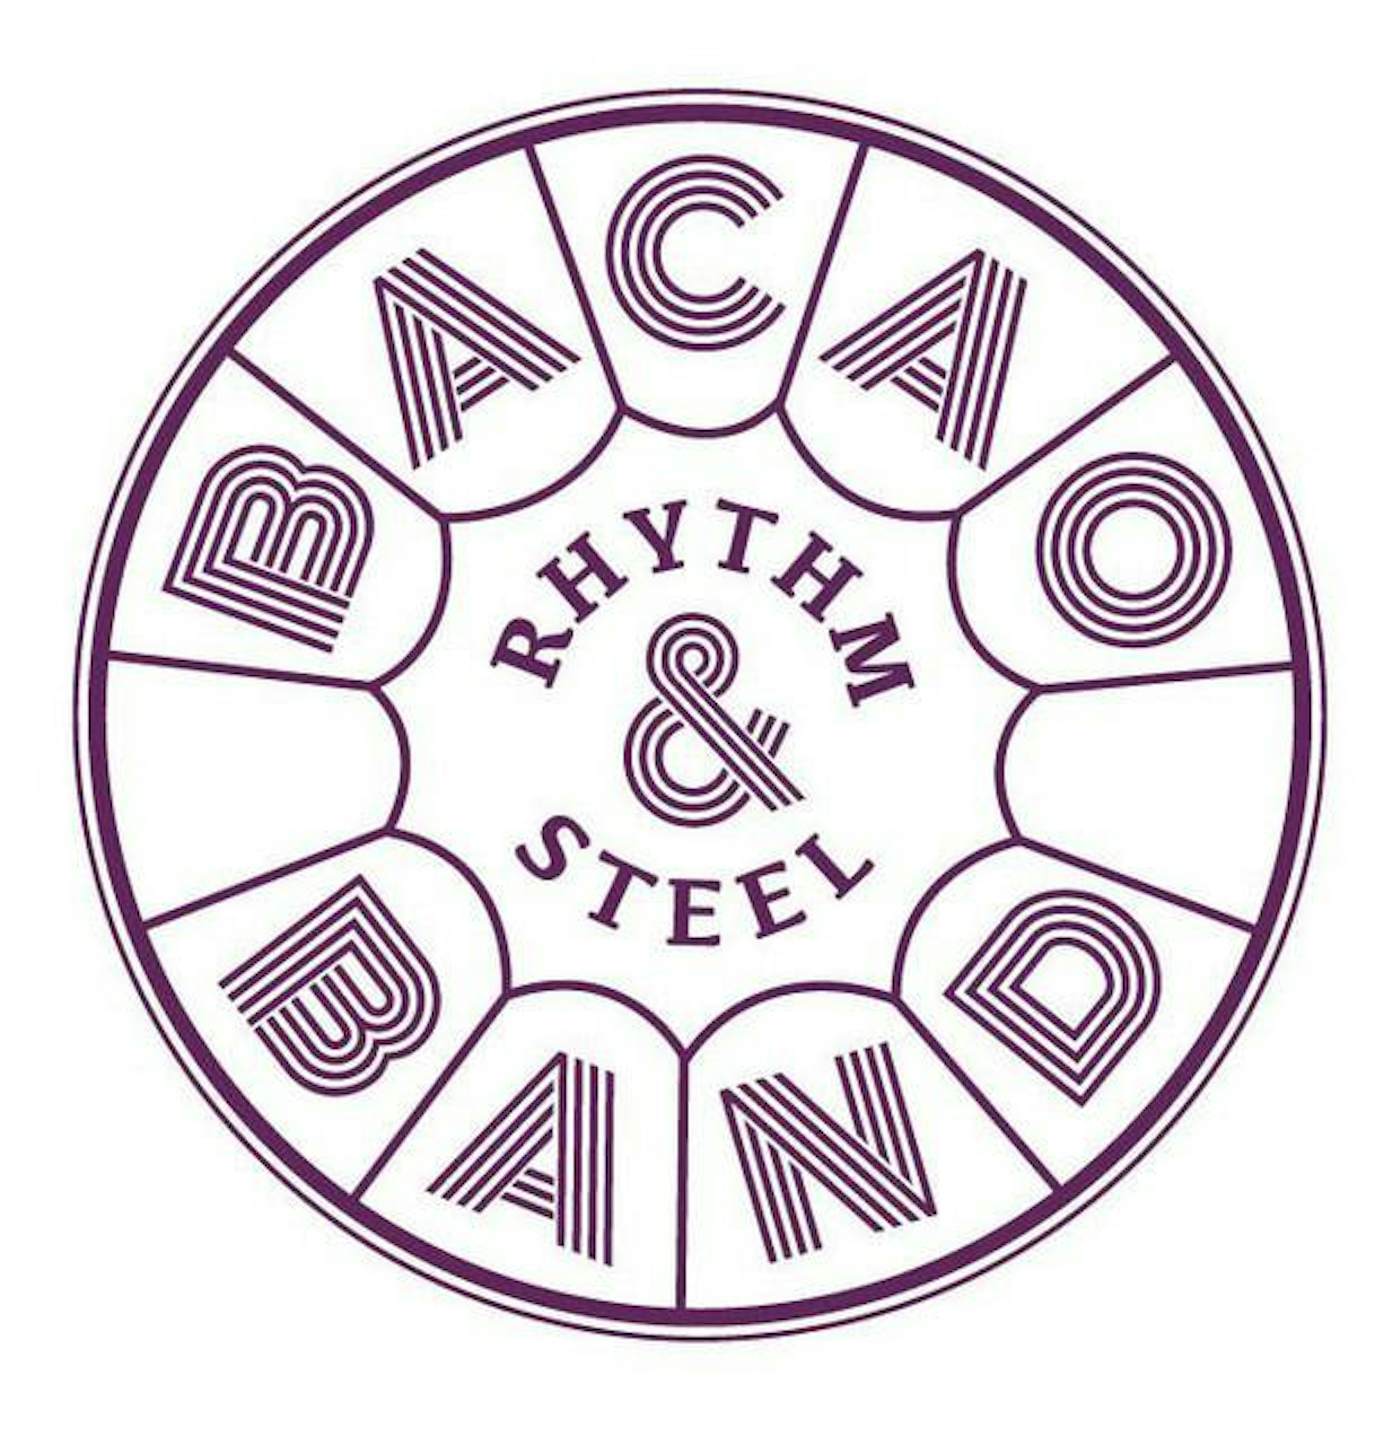 Bacao Rhythm & Steel Band